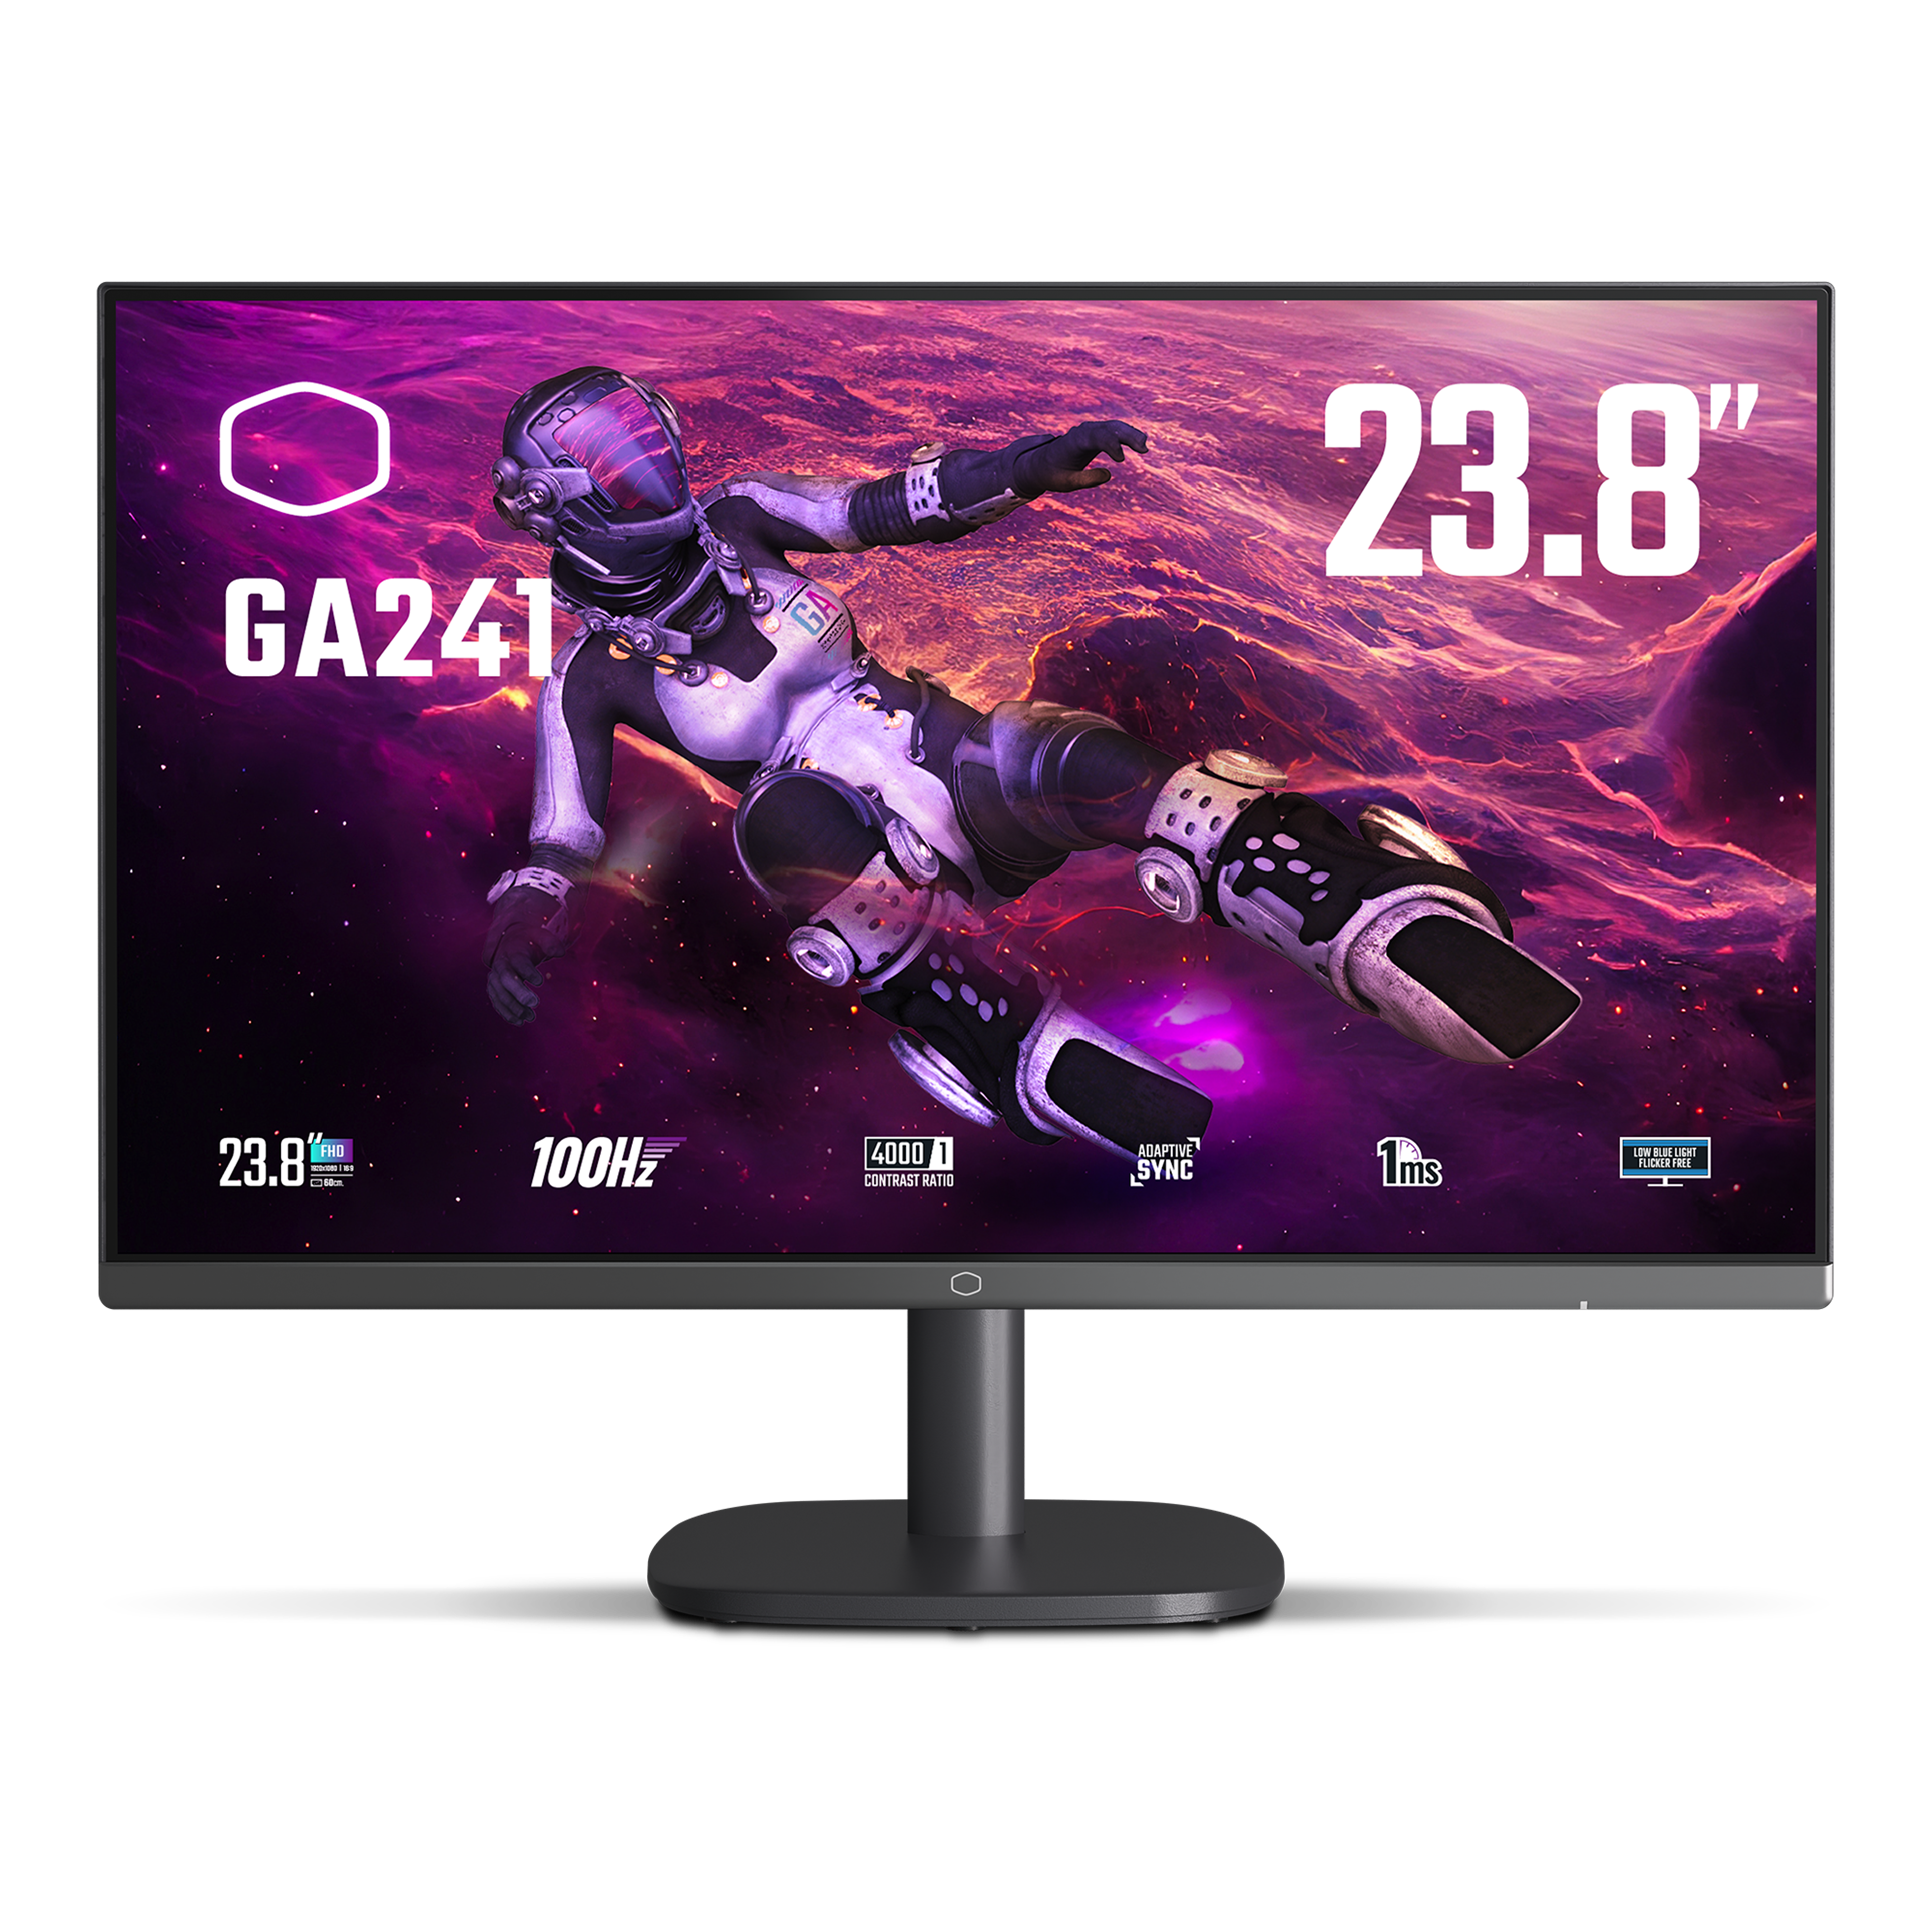 GA241 Gaming Monitor